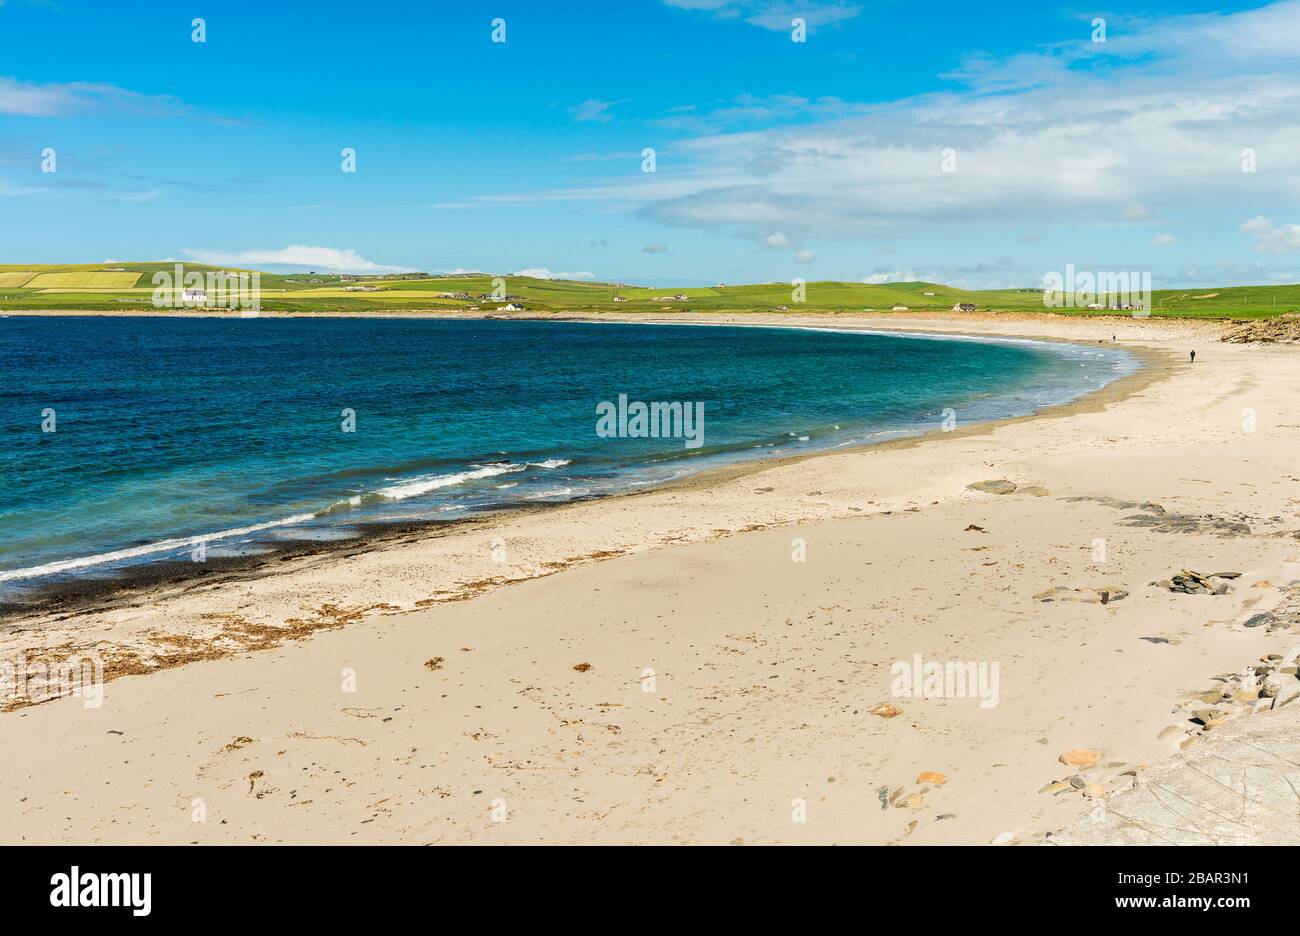 La plage de la Baie de Skaill, site de Skara Brae Neolithic règlement, Orkney, Ecosse, Royaume-Uni. Banque D'Images